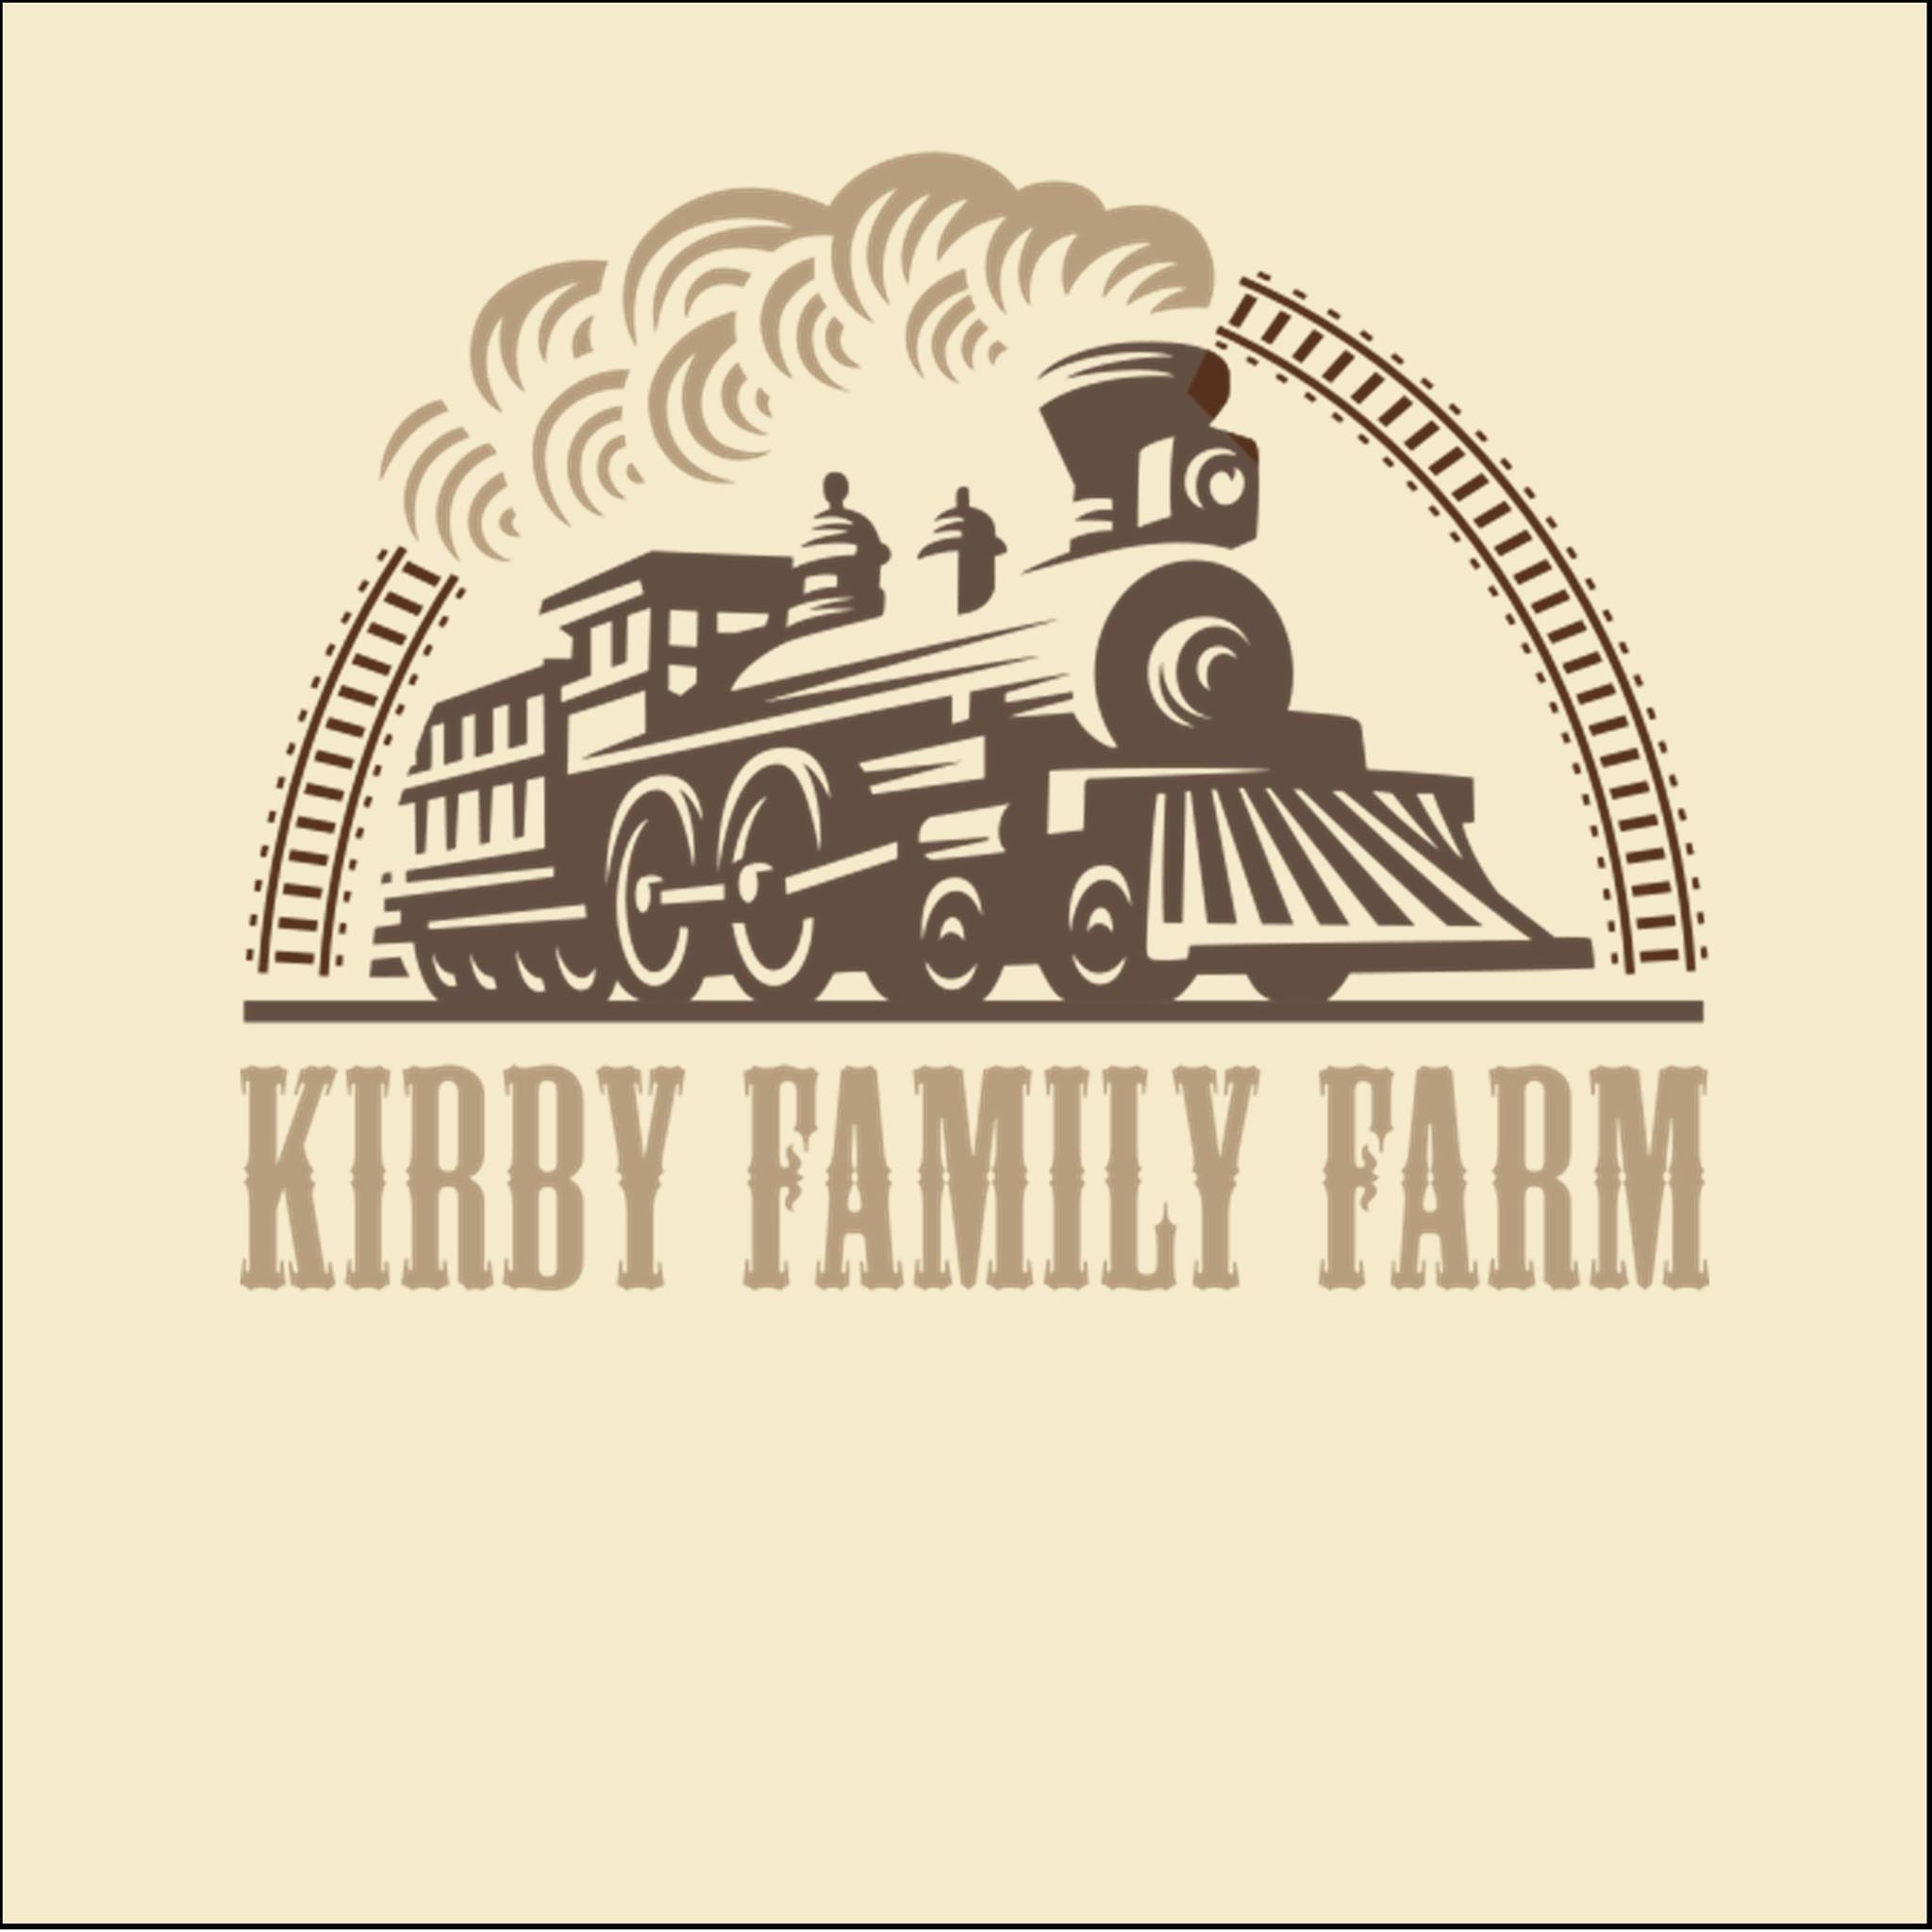 Kirby Family Farm|Park|Travel